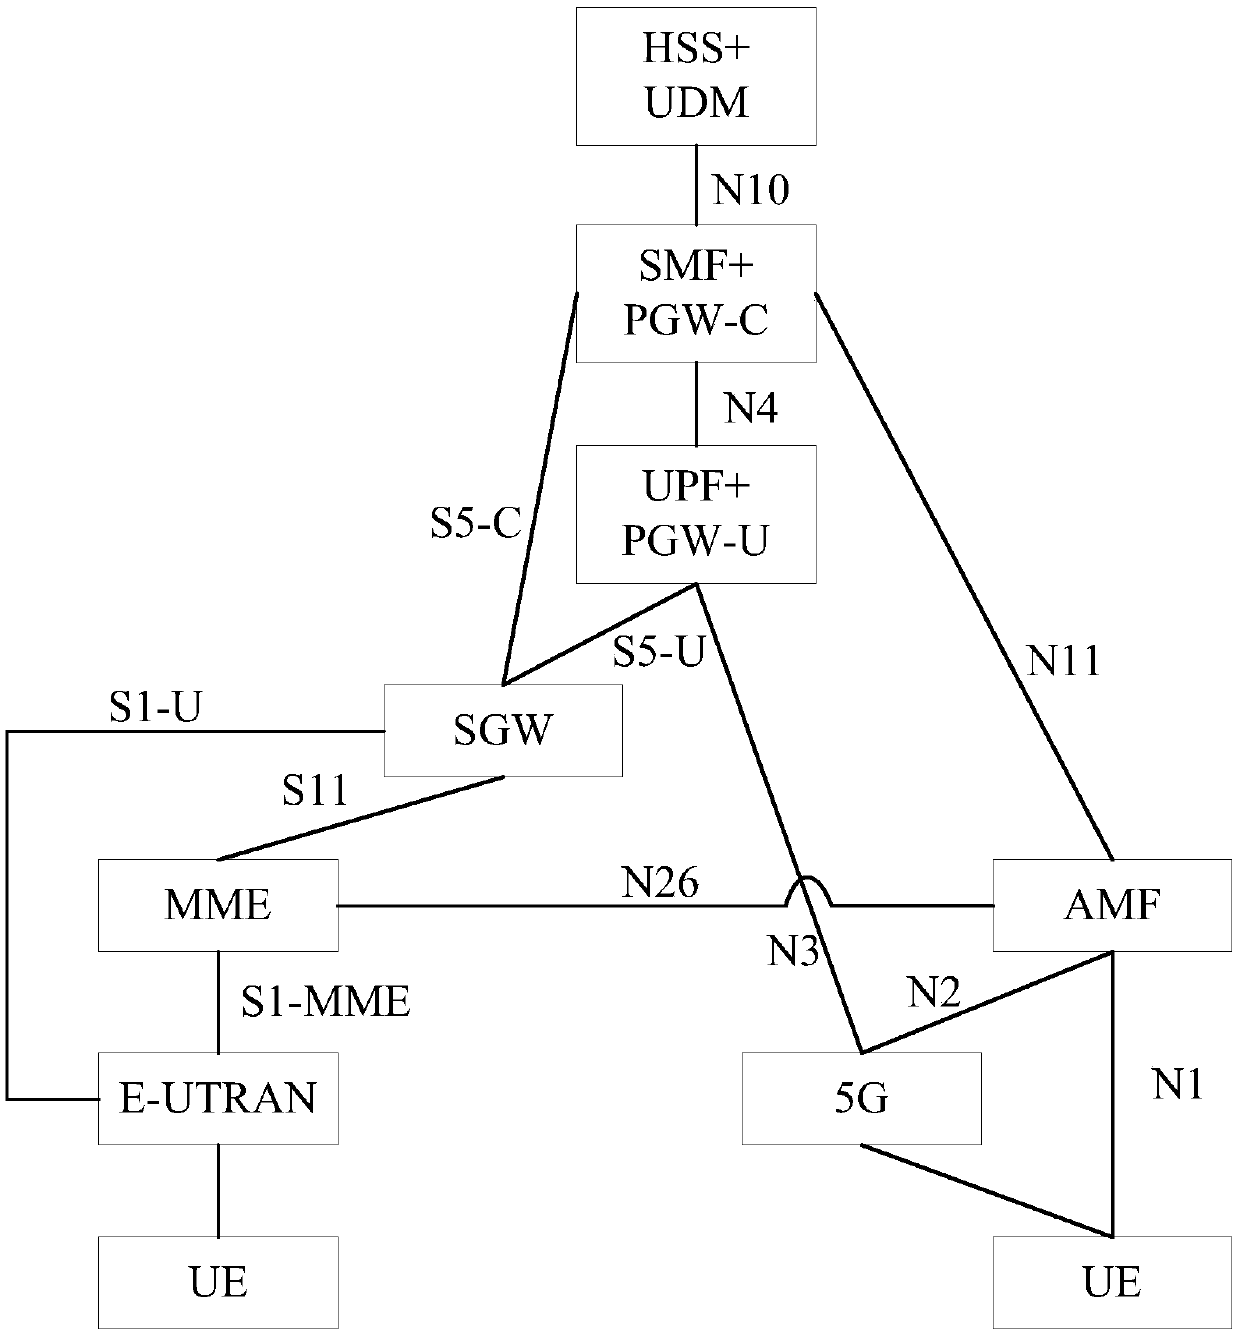 AMF selection method, network slice selection method and AMF